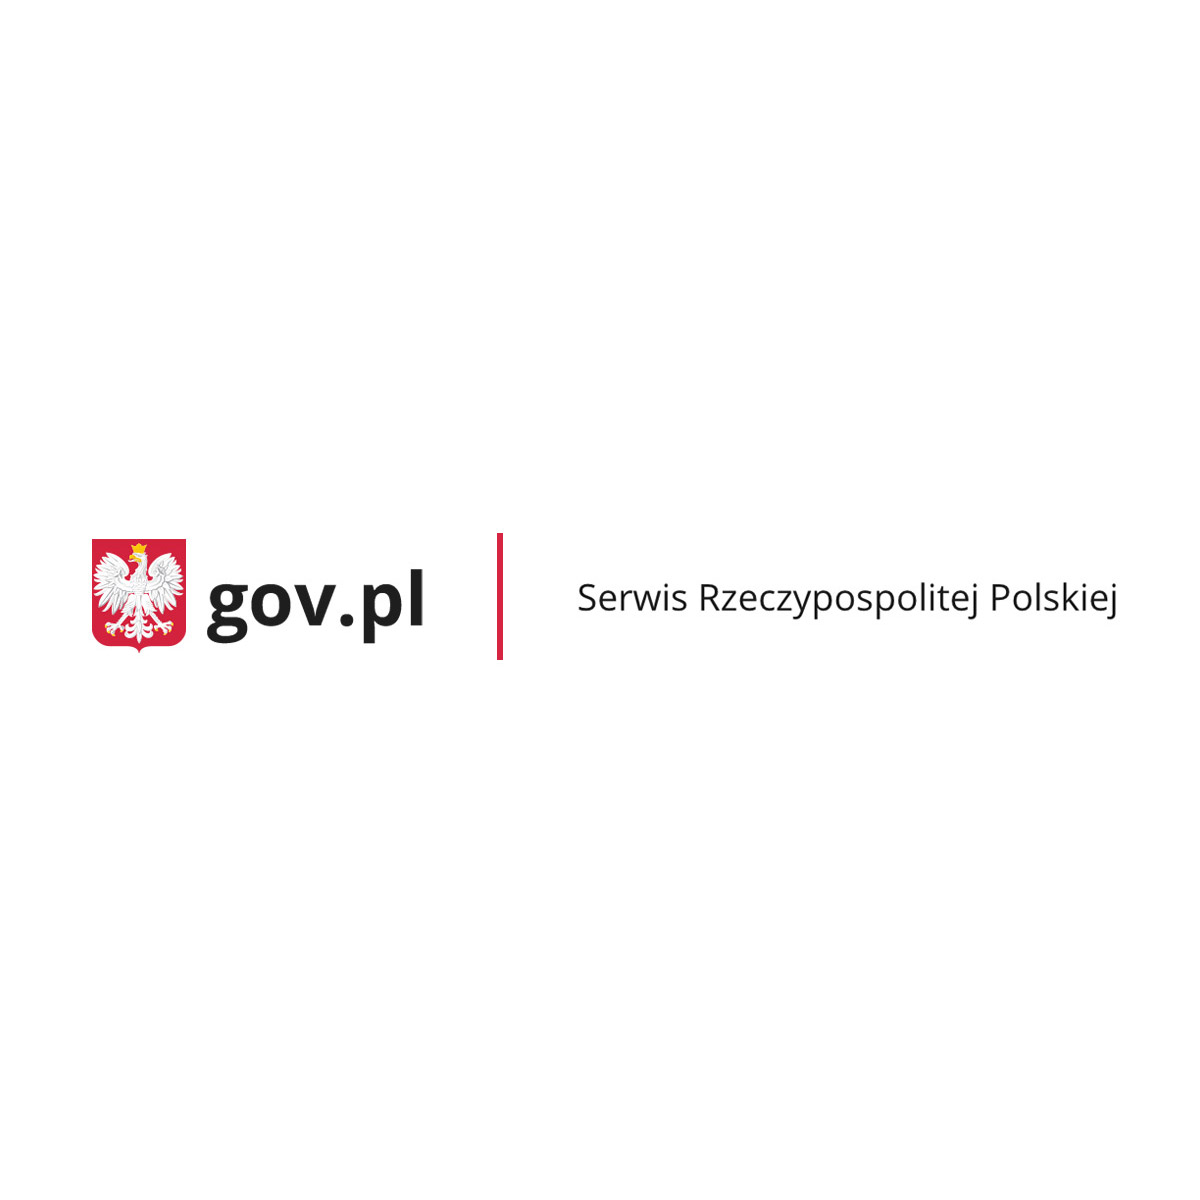 www.premier.gov.pl